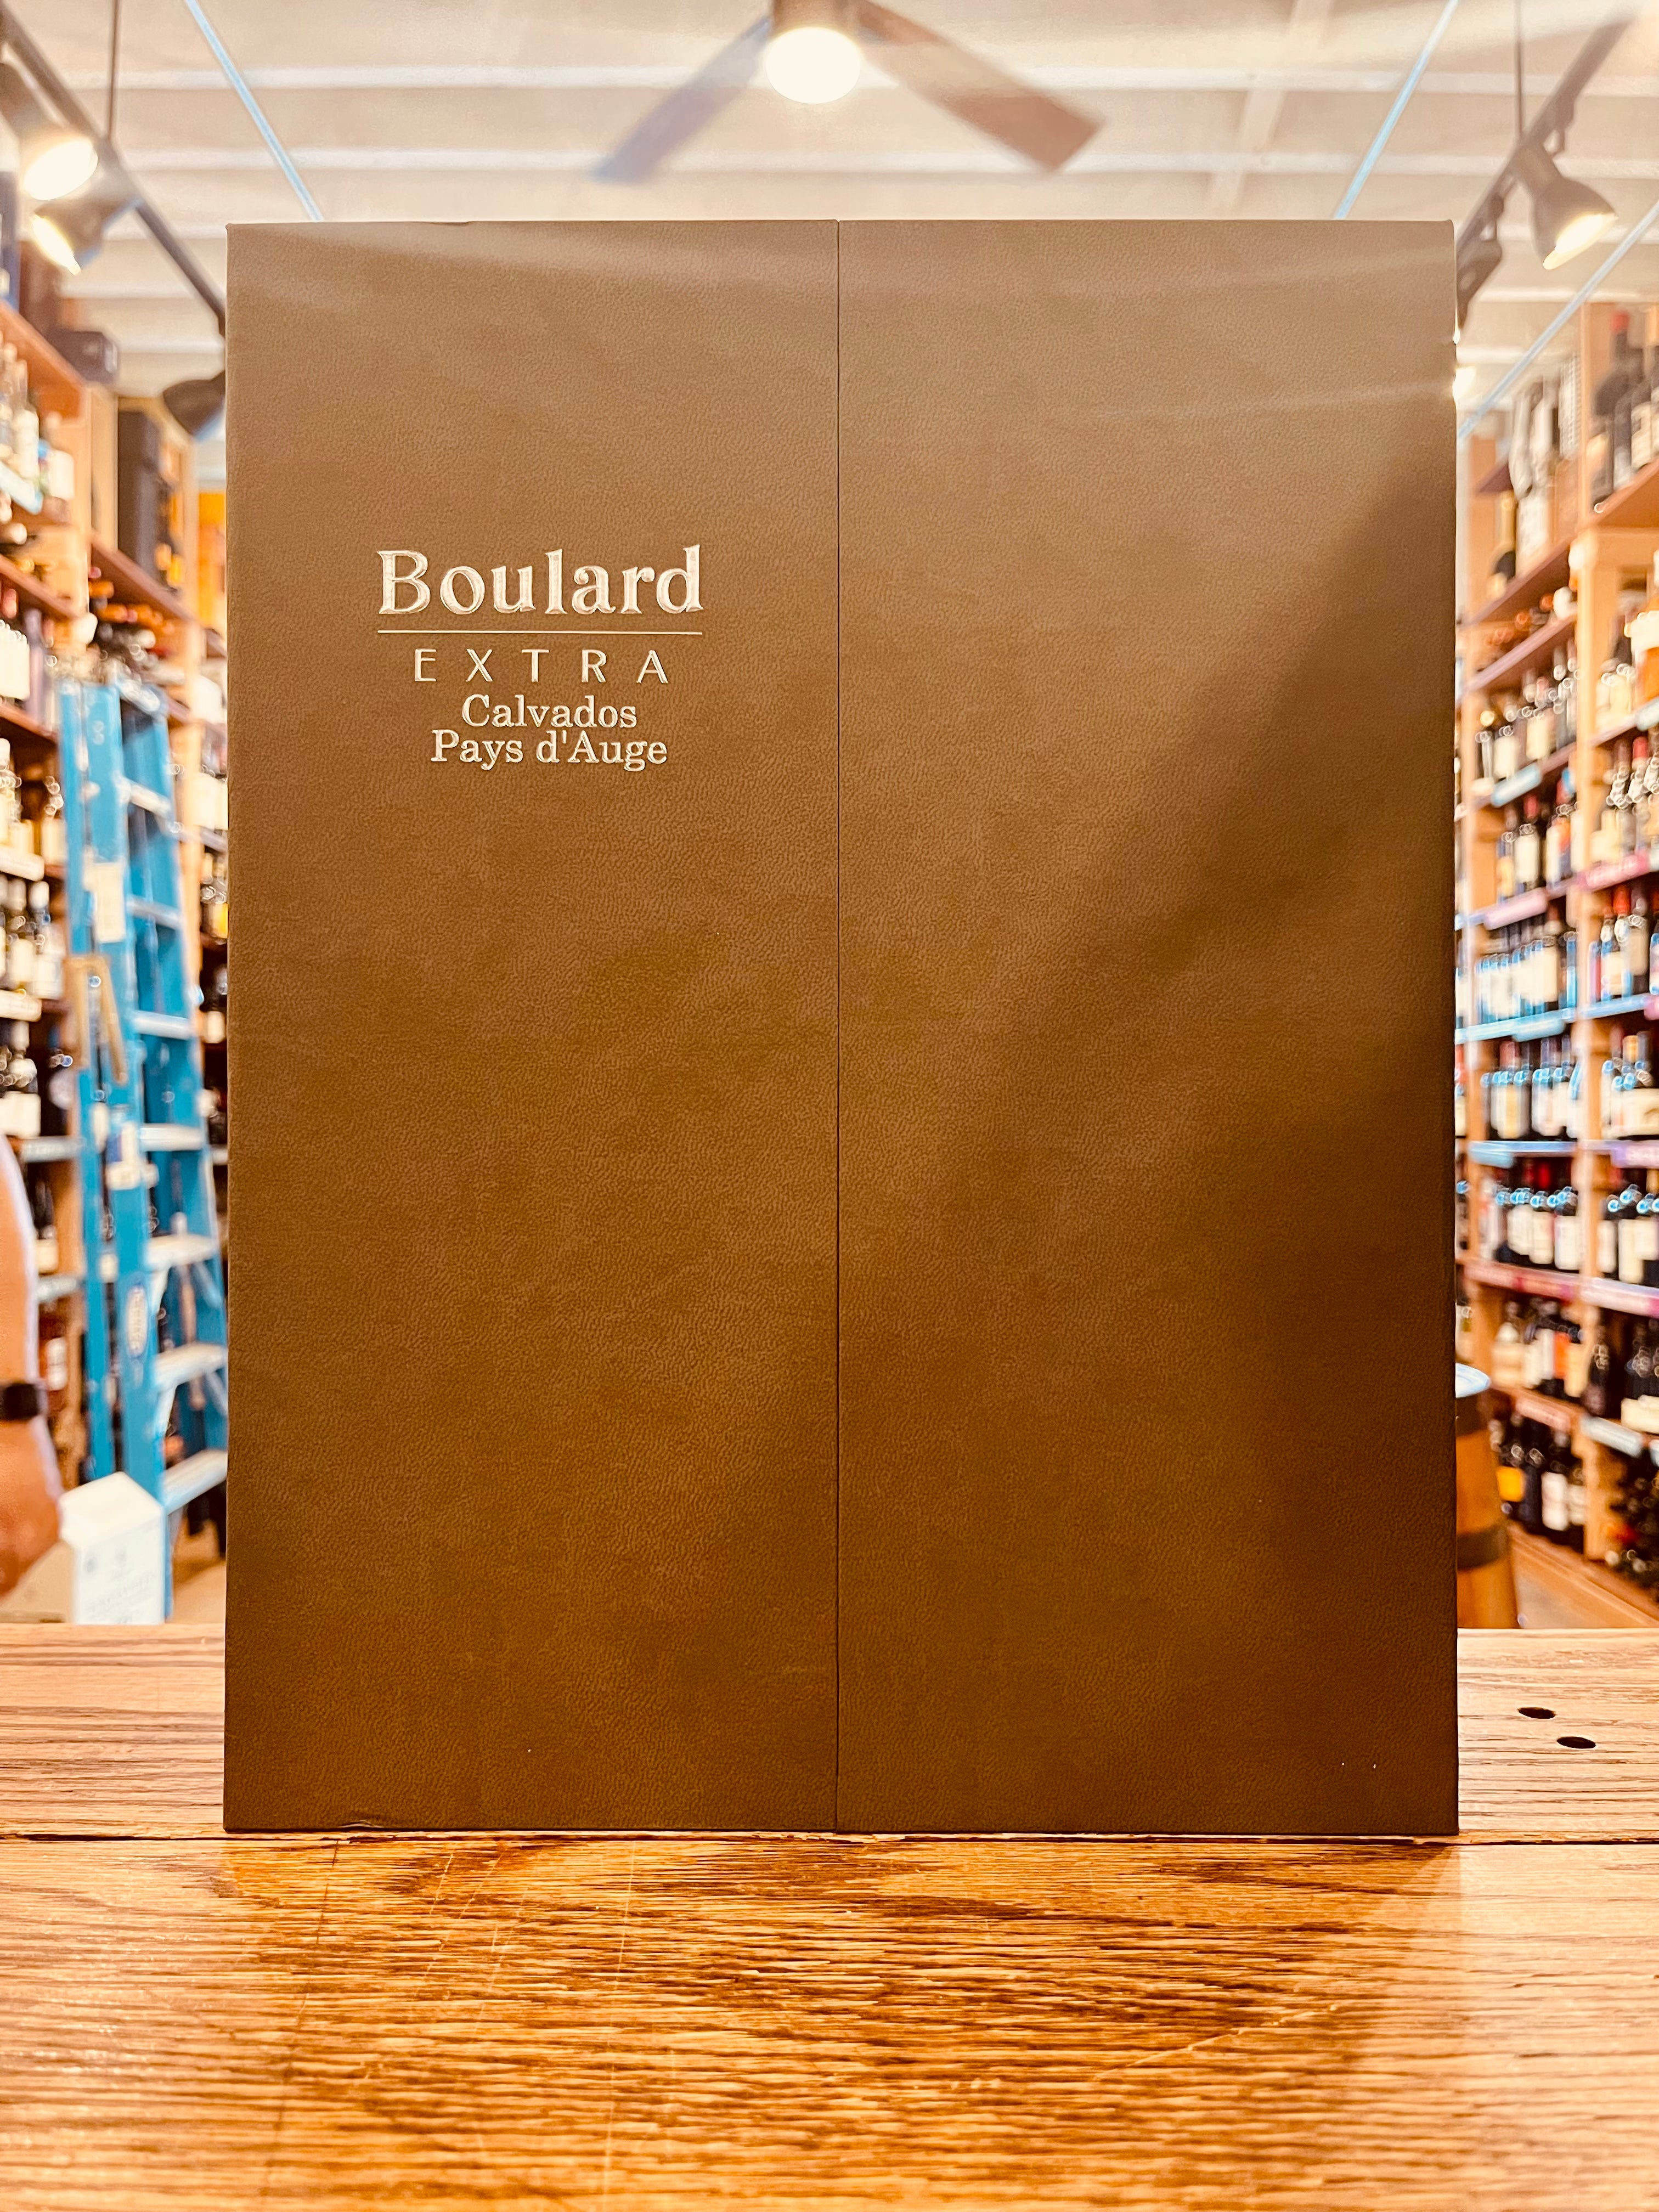 Boulard Extra Calvados Pays d’Auge 750mL